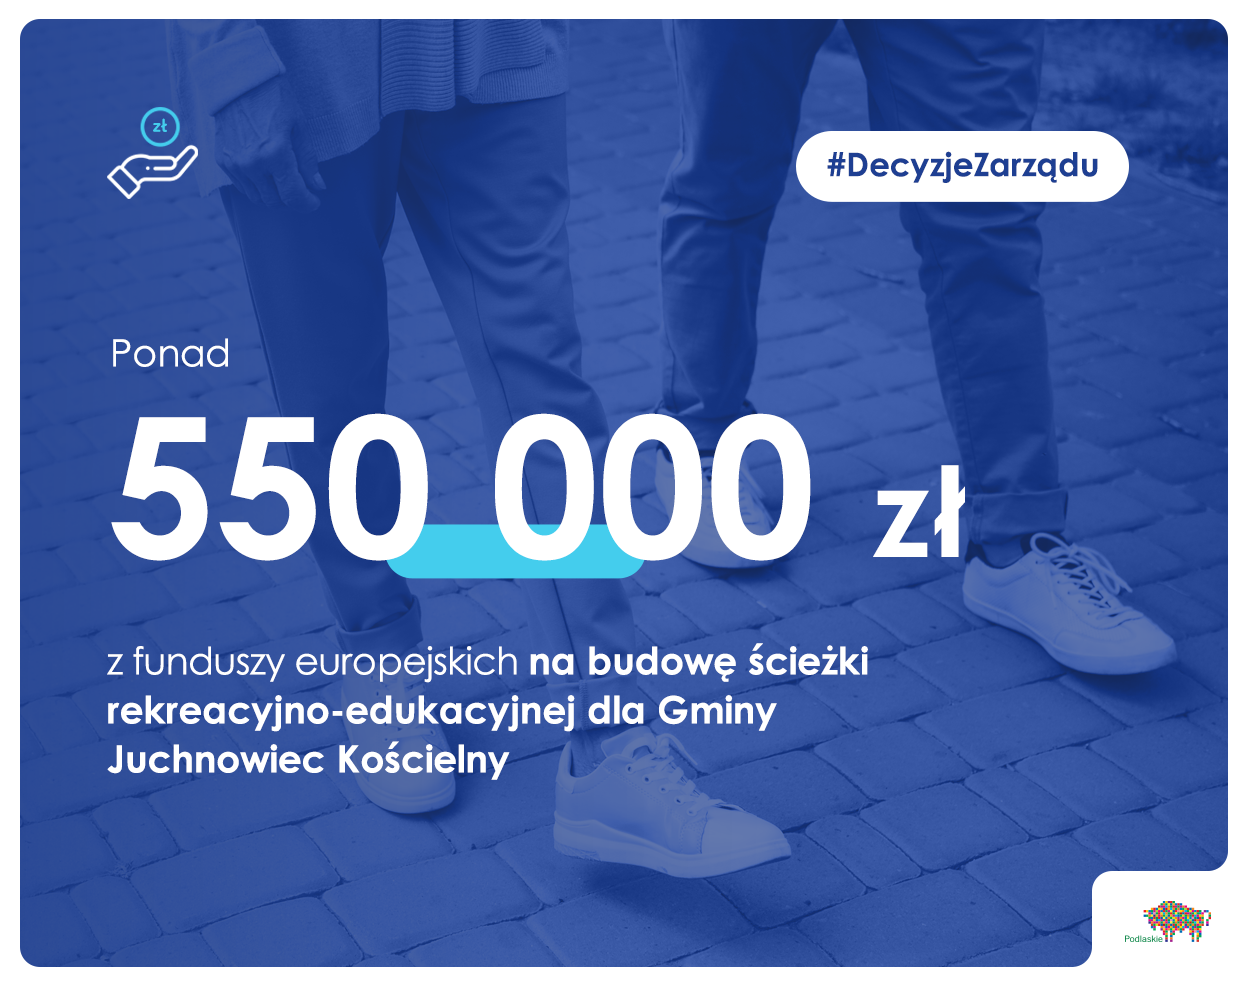 napis ponad 550 000 zł z funduszy europejskich na budowę ścieżki rekreacyjno-edukacyjnej dla Gminy Juchnowiec Kościelny na tle idących osób